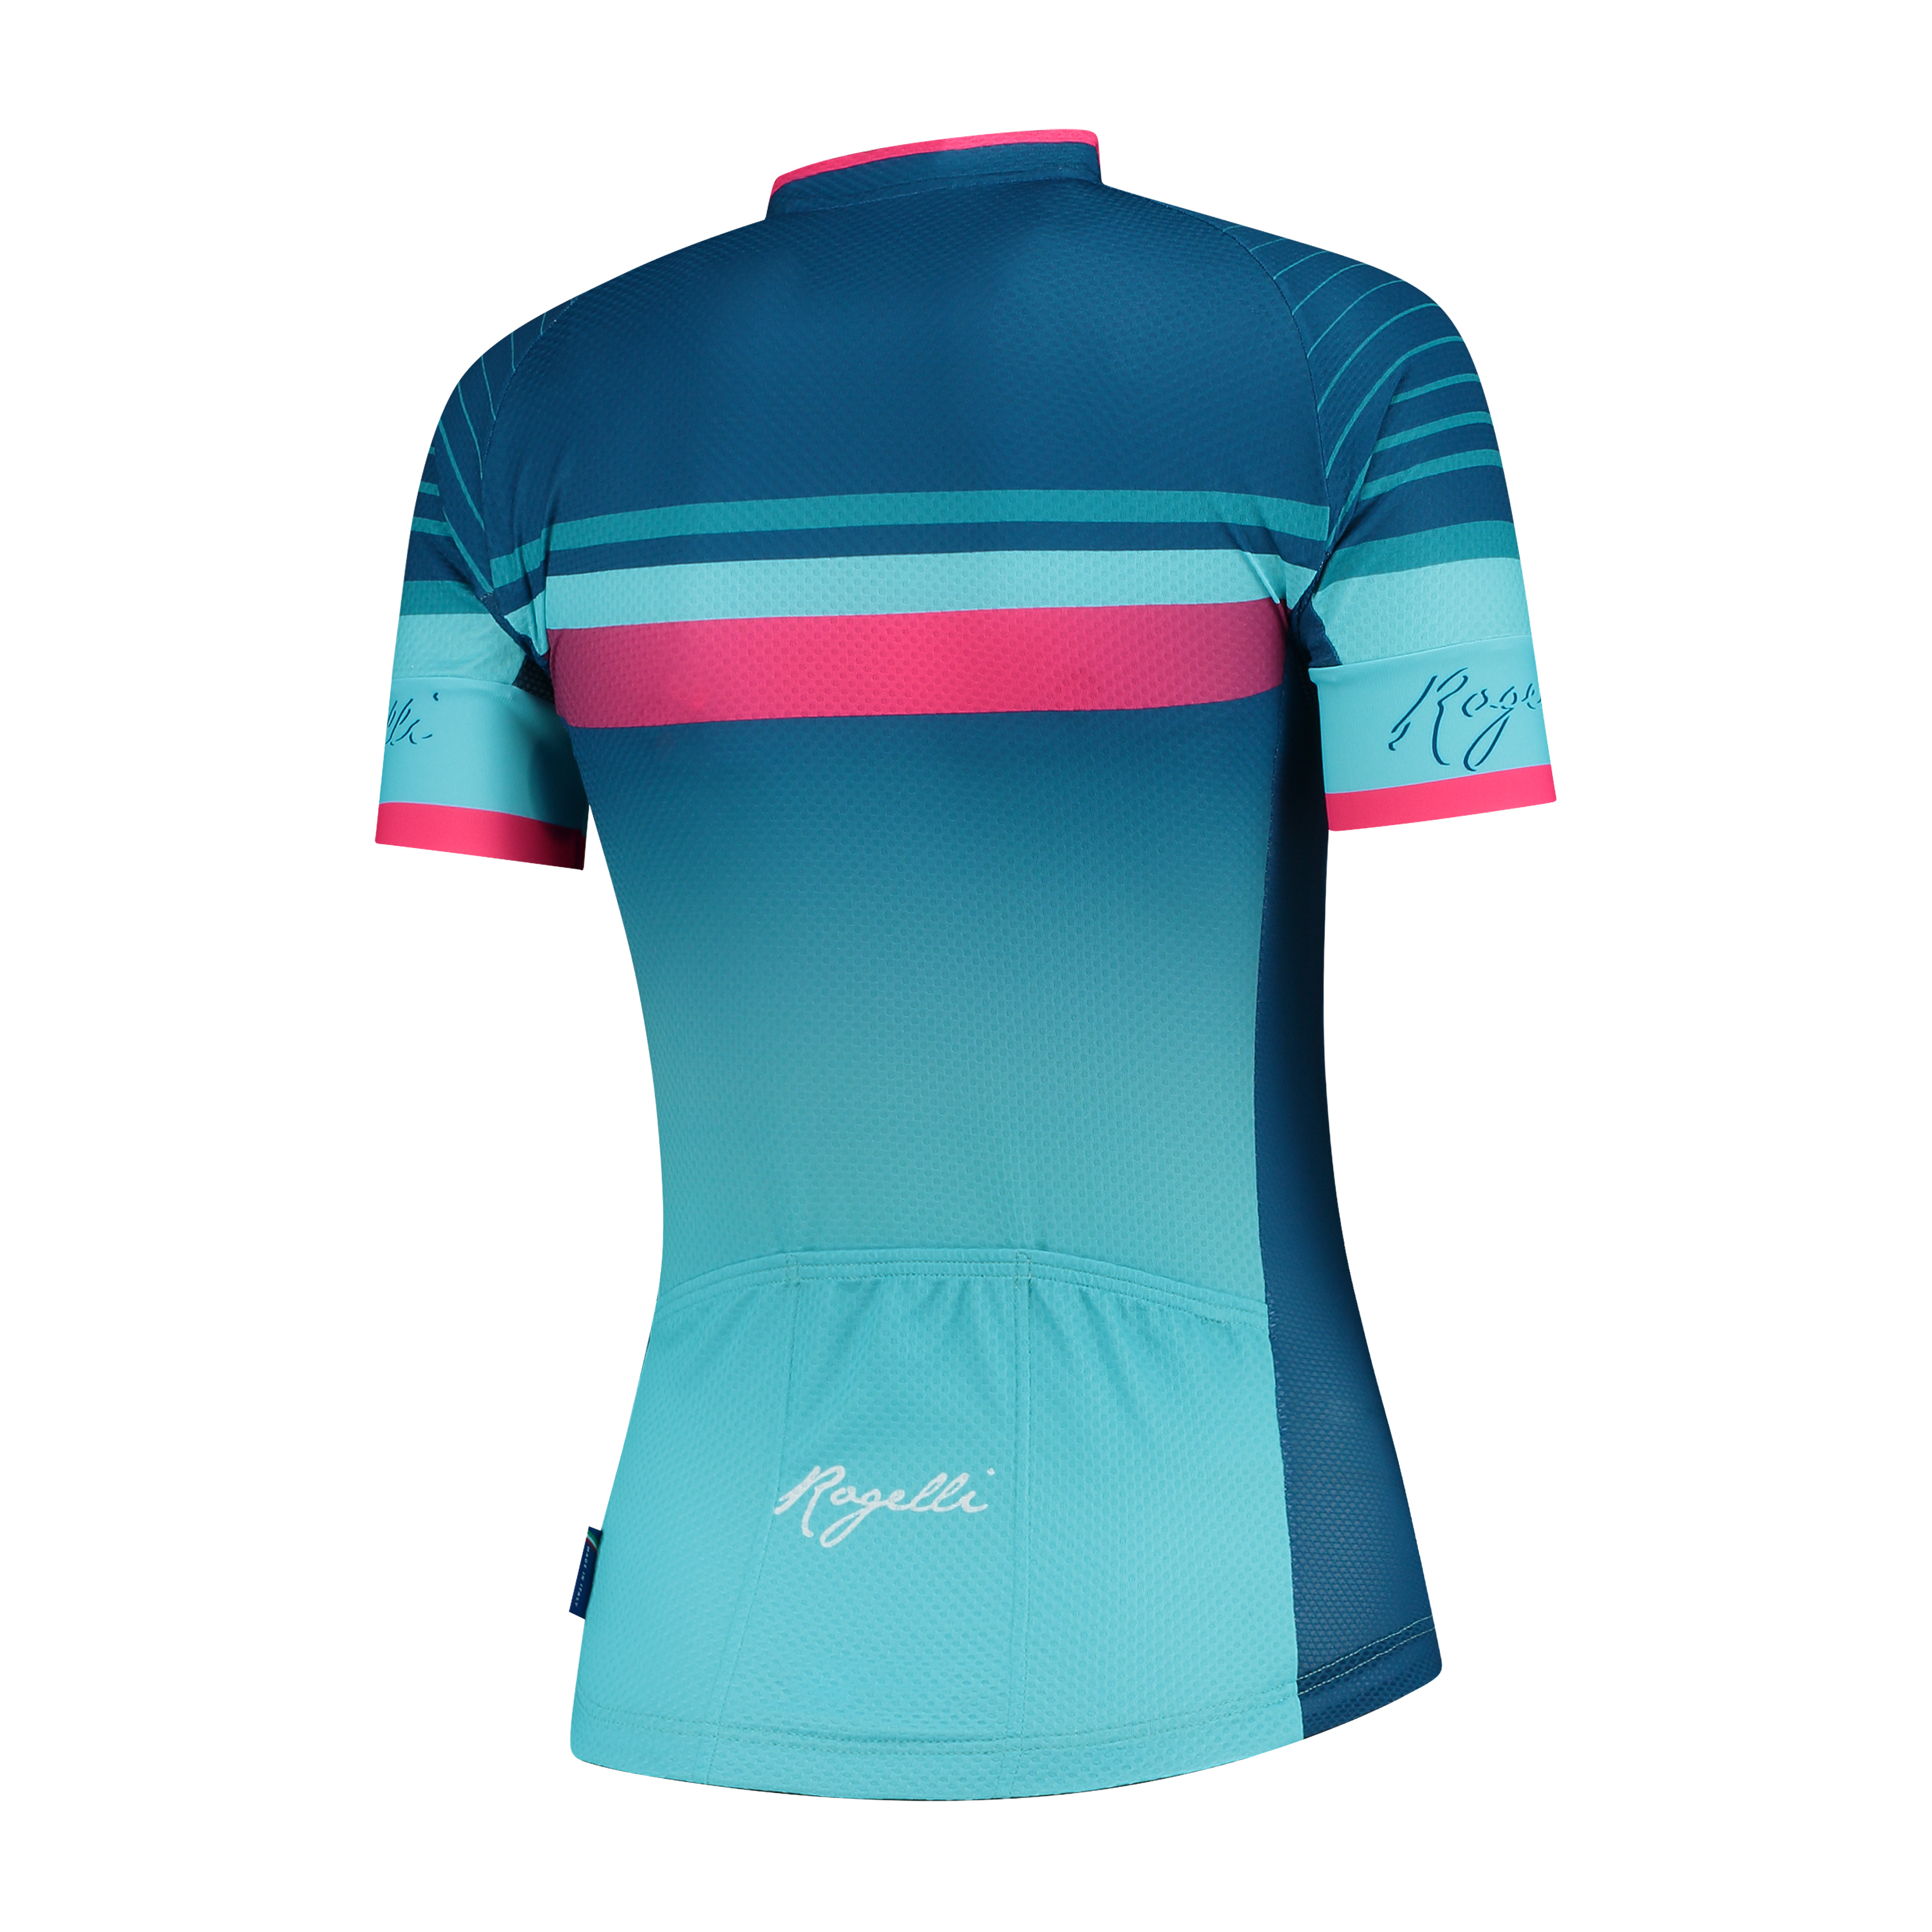 Dames fietsshirt KM Impress Blauw/roze